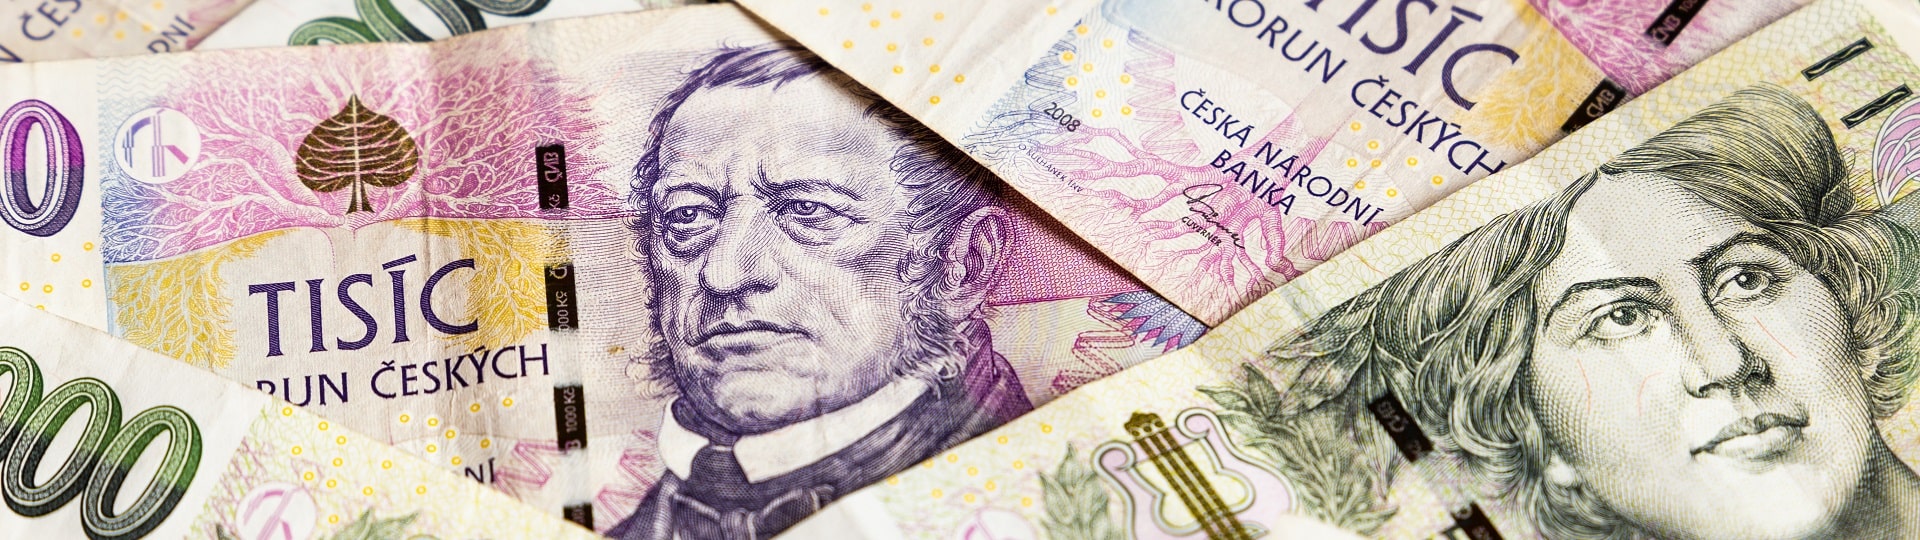 V pololetí státní rozpočet hospodařil se schodkem 20,7 miliardy korun